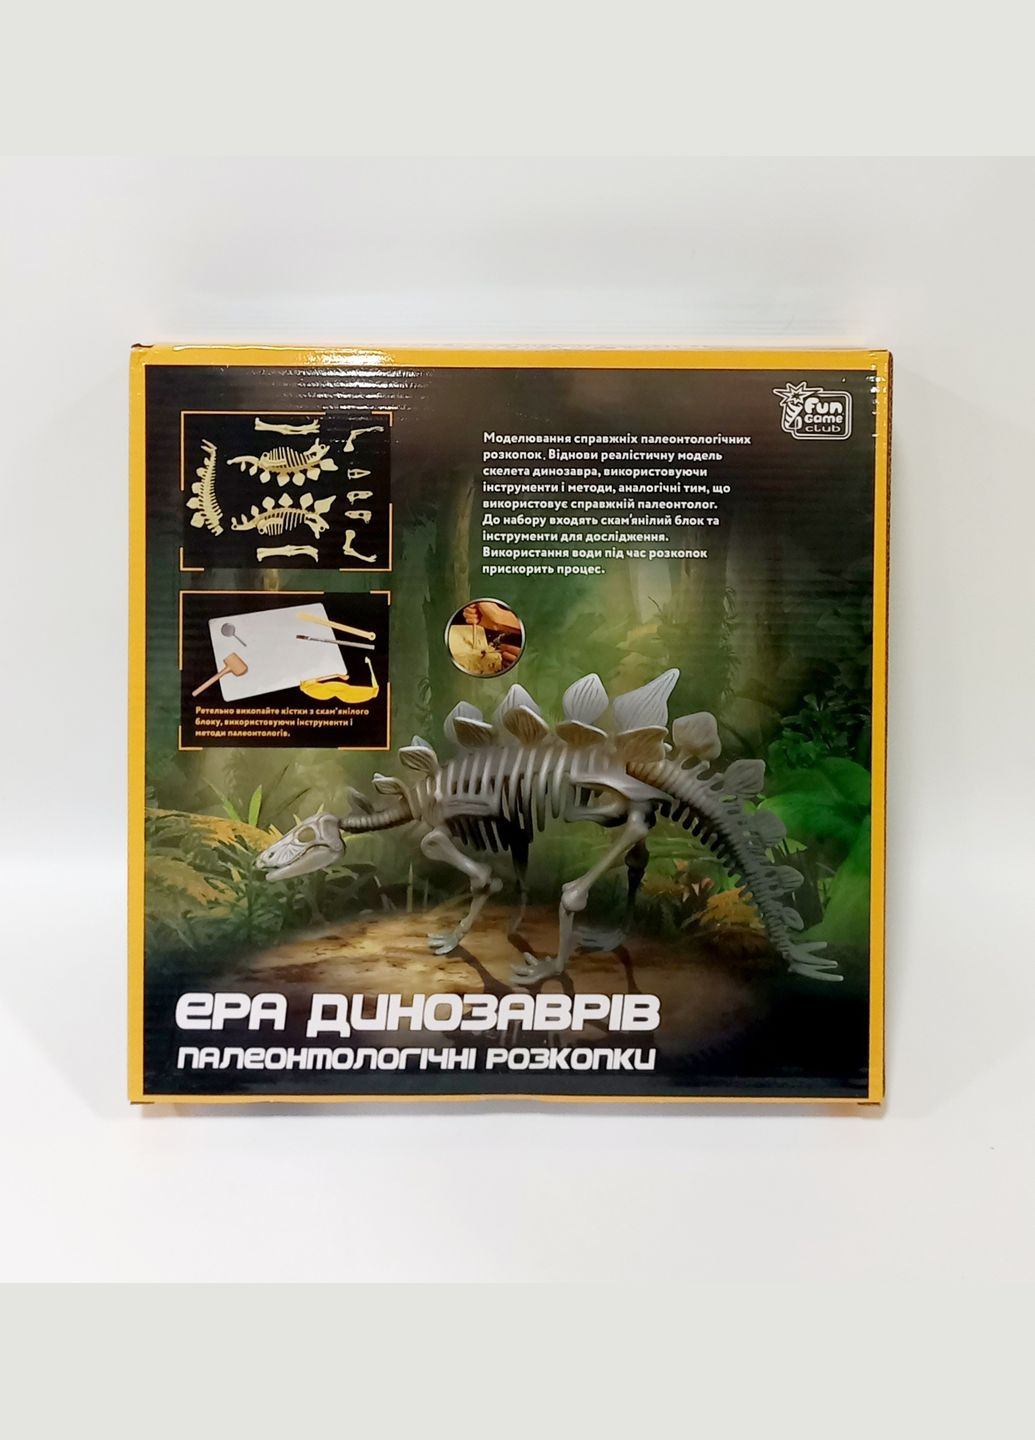 Раскопки "Эра динозавров. Стегозавр" 12723 в коробке (6945717435049) Fun Game (292708077)